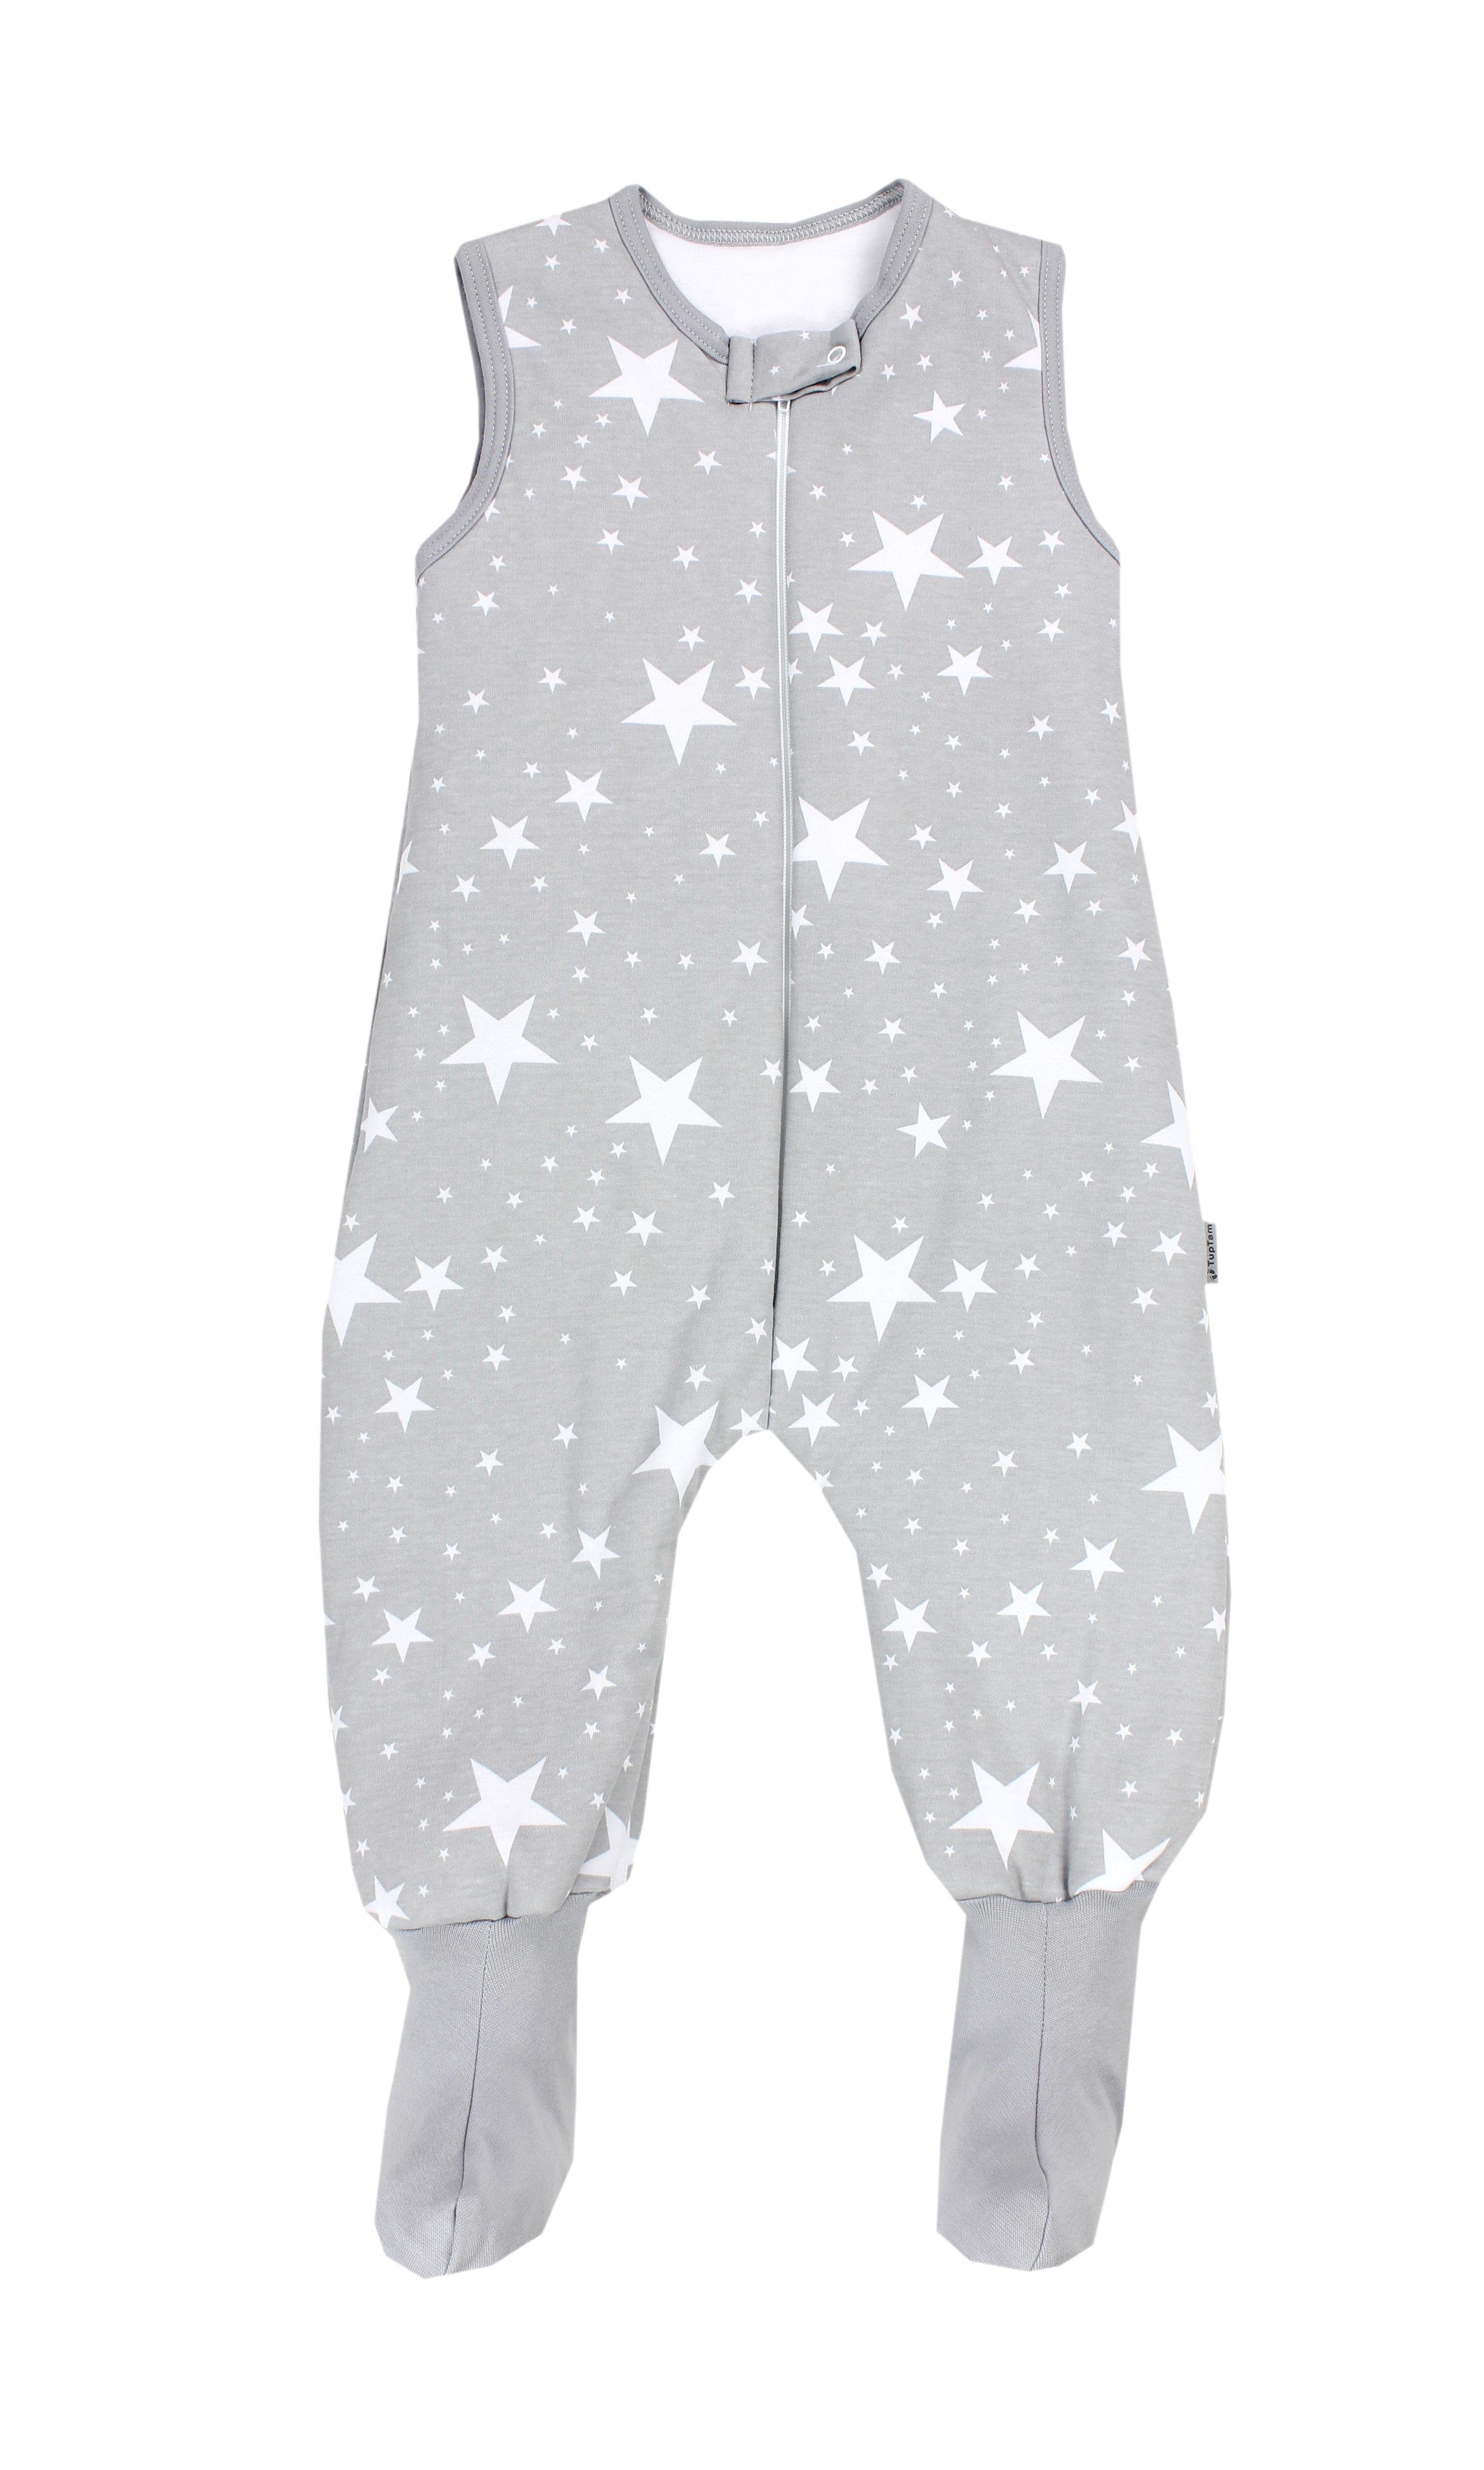 TupTam Babyschlafsack Winterschlafsack mit Beinen und Füßen OEKO-TEX zertifiziert, 2.5 TOG Weiße Sterne / Grau